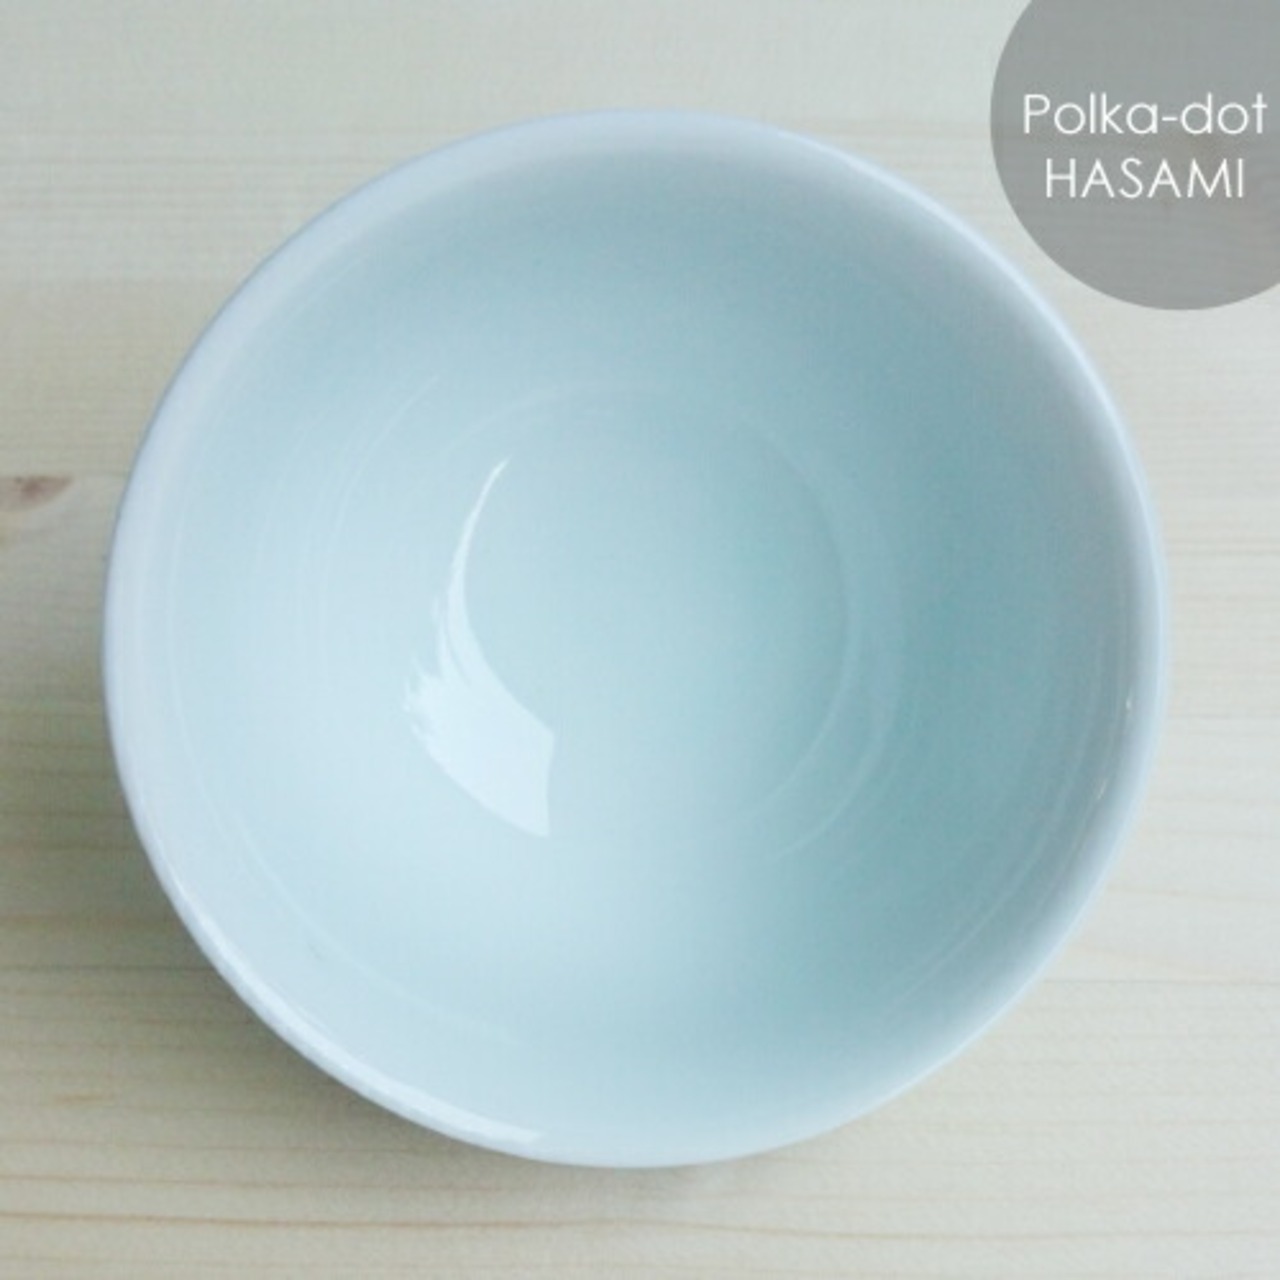 ＨＡＳＡＭＩ　ポルガドット　仙茶 4-018